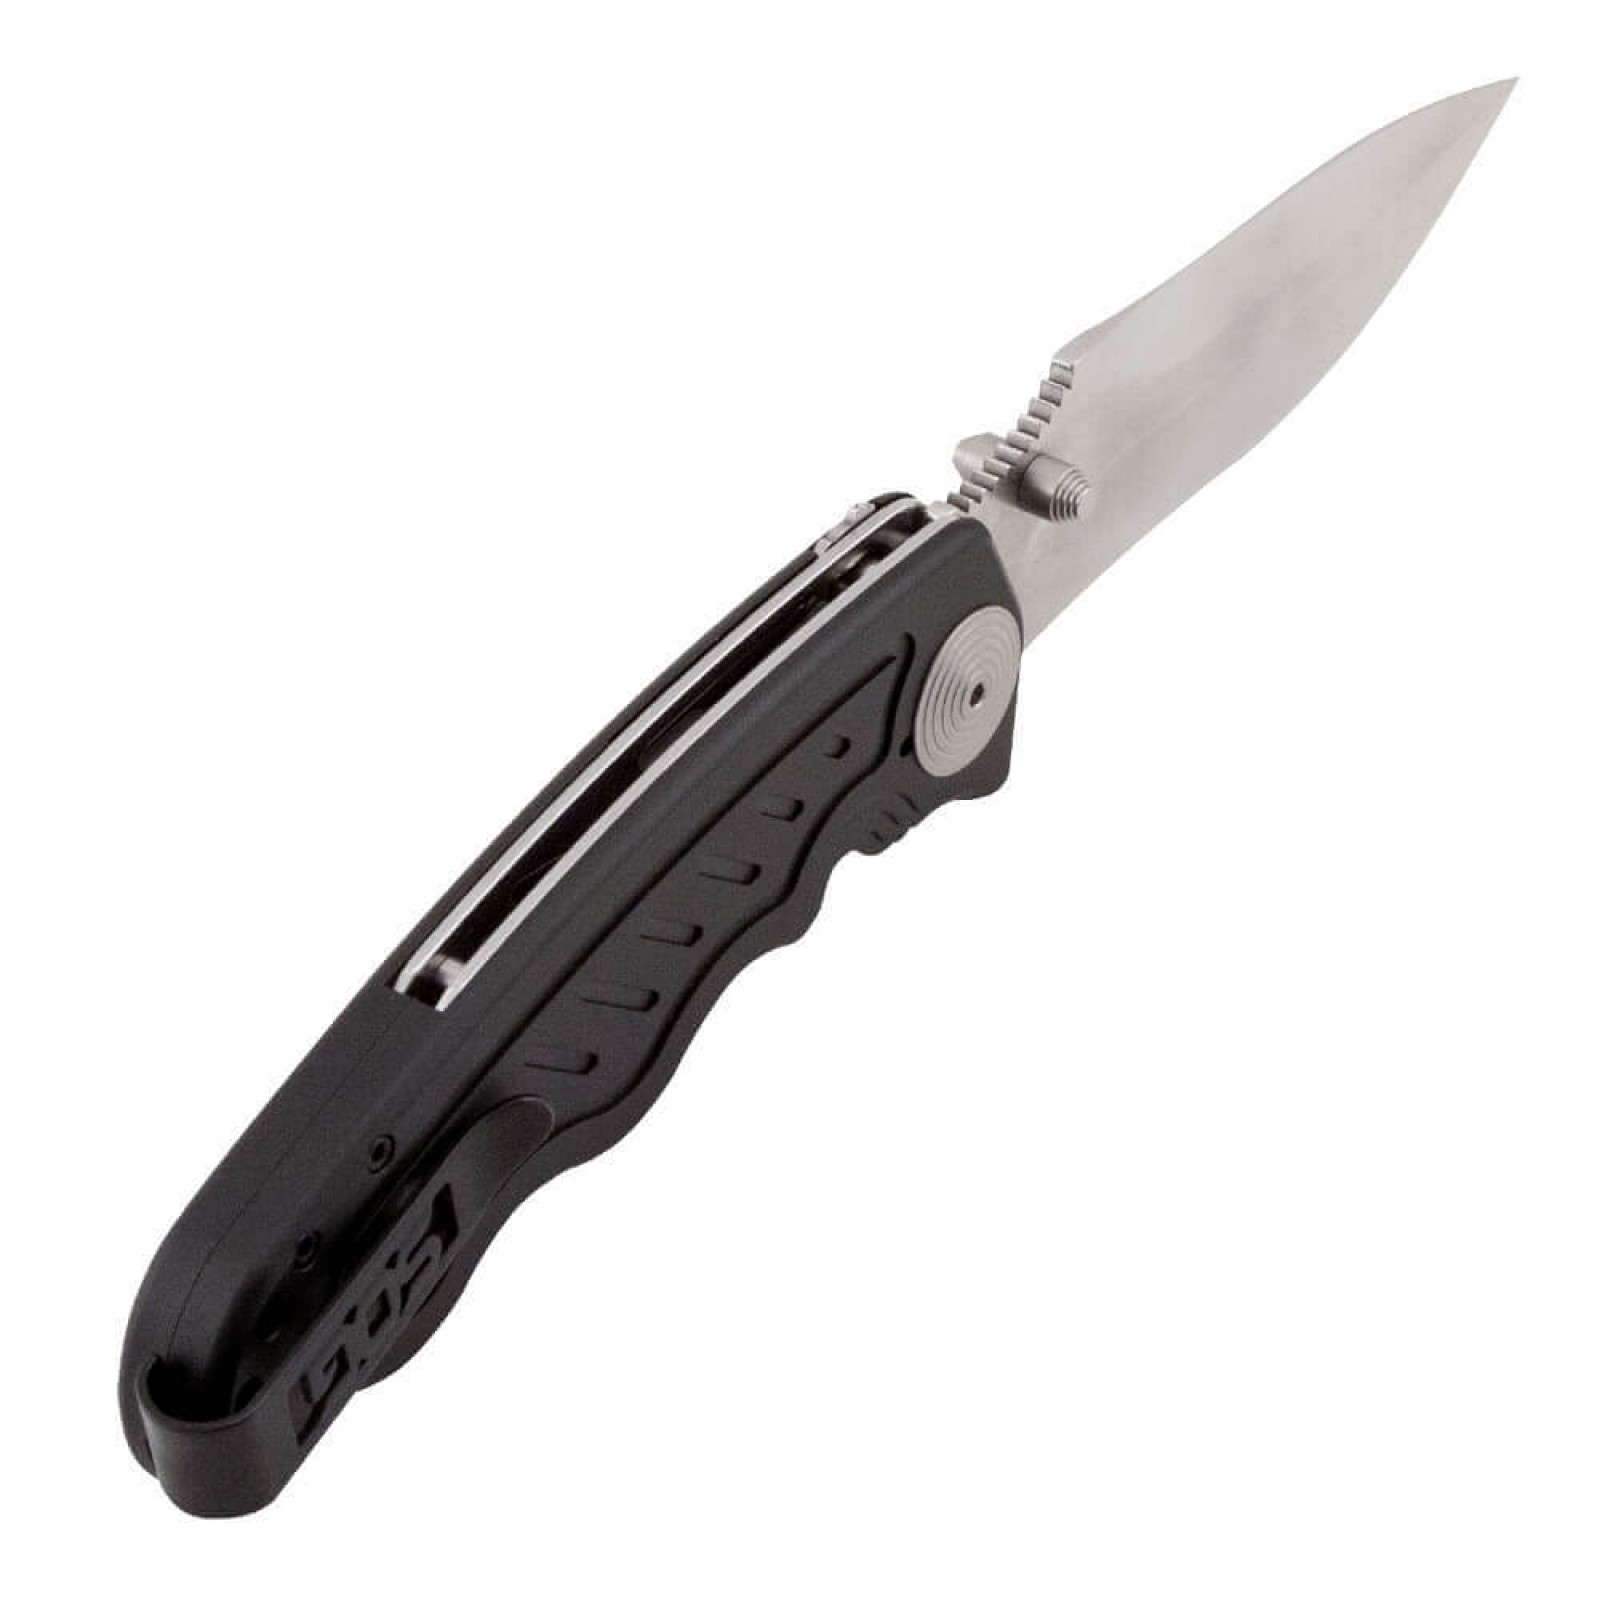 Складной нож Zoom - SOG ZM1011, сталь лезвия AUS-8 Satin Polished, рукоять алюминий, чёрный - фото 7